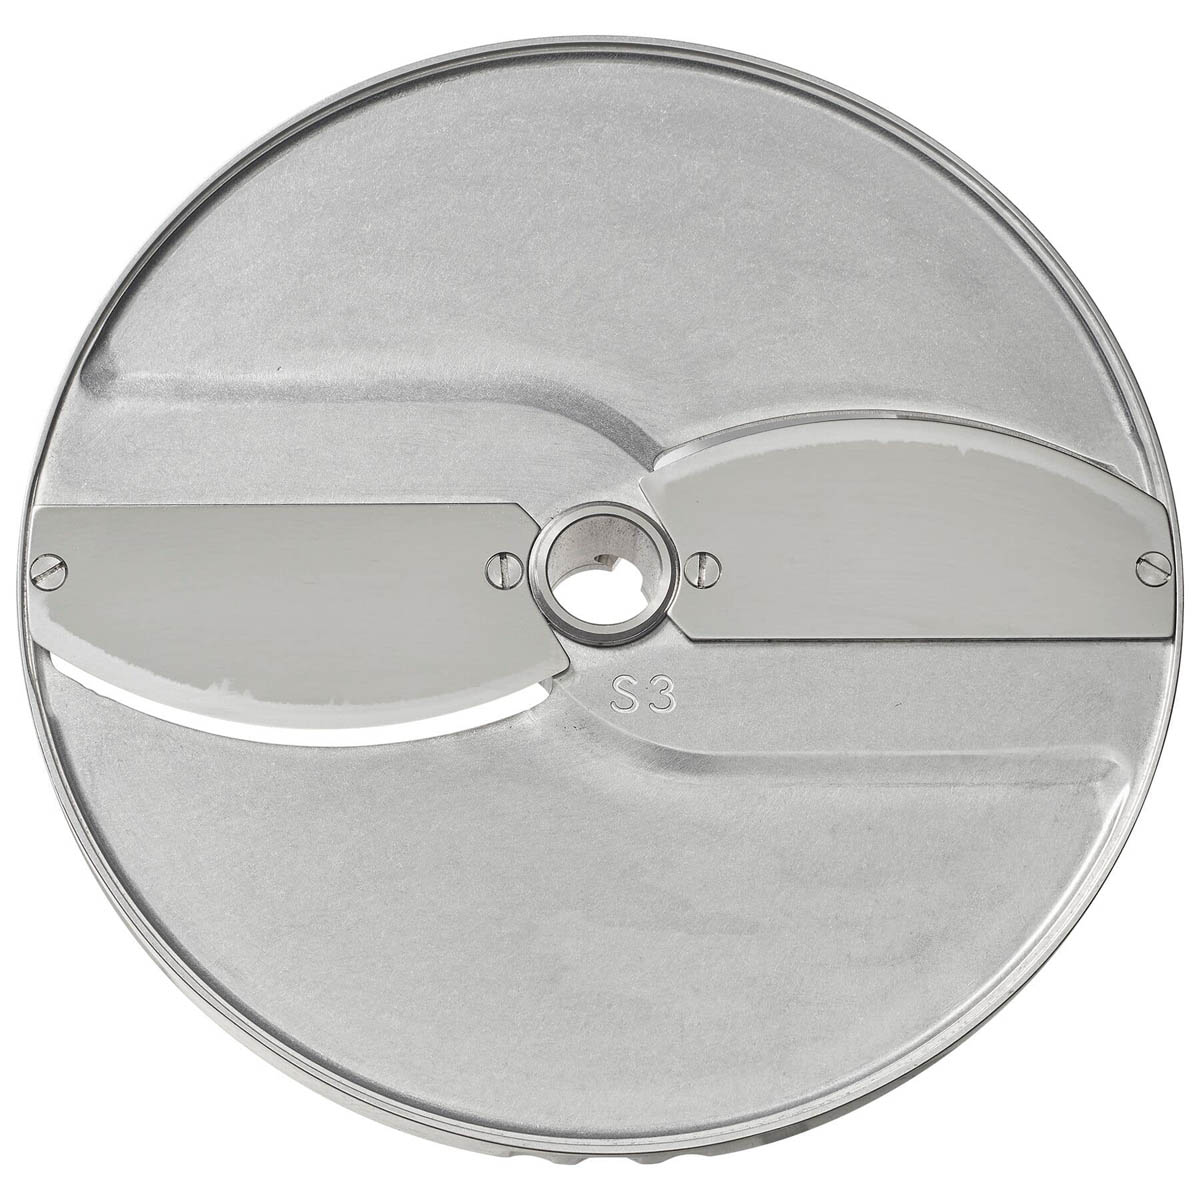 Berkel SLICER-S3 Slicing Disc Plate Food Processor